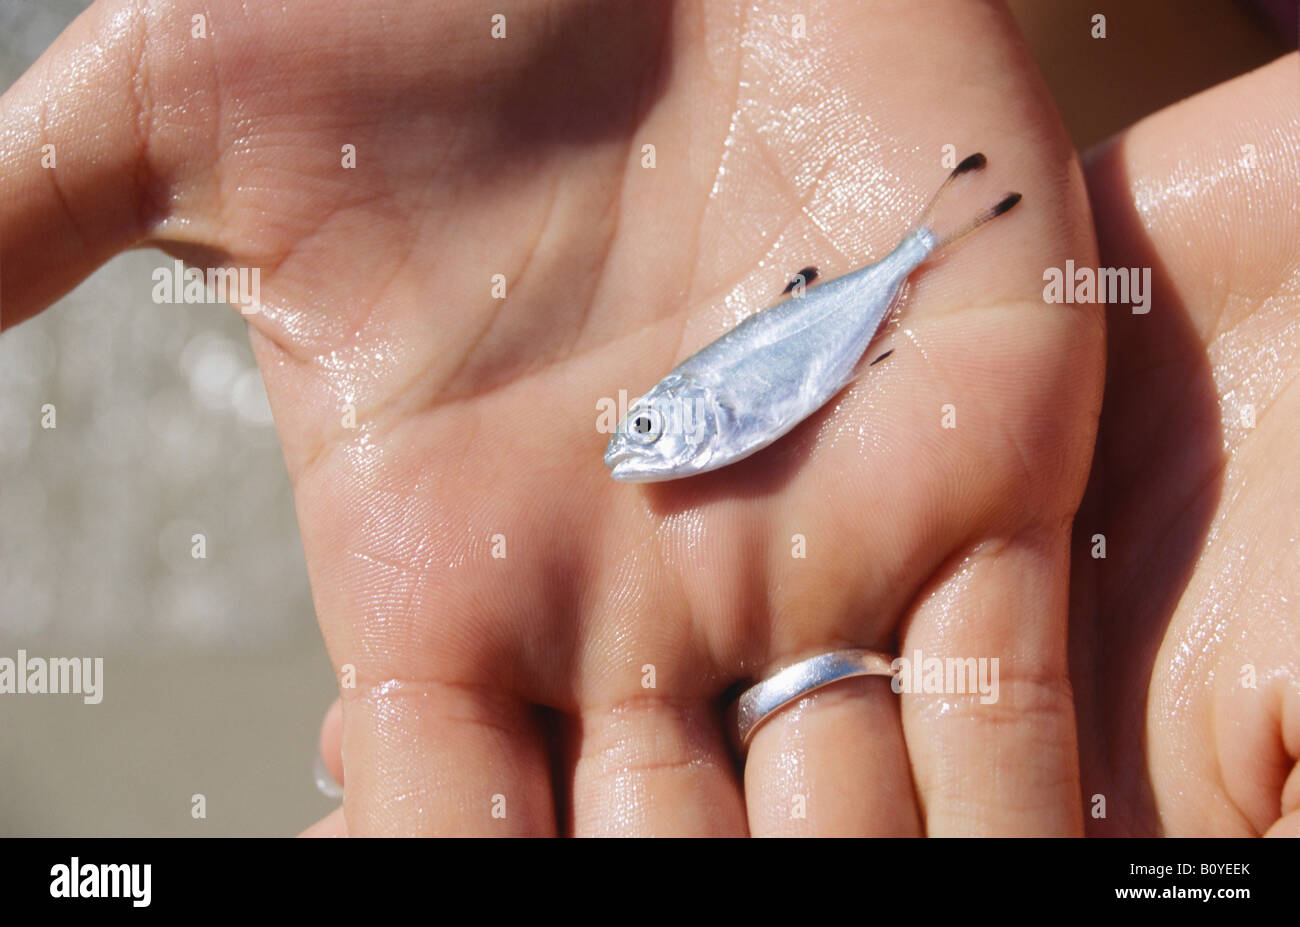 Vivere pesci piccoli nel proteggere la mano da bad foto della